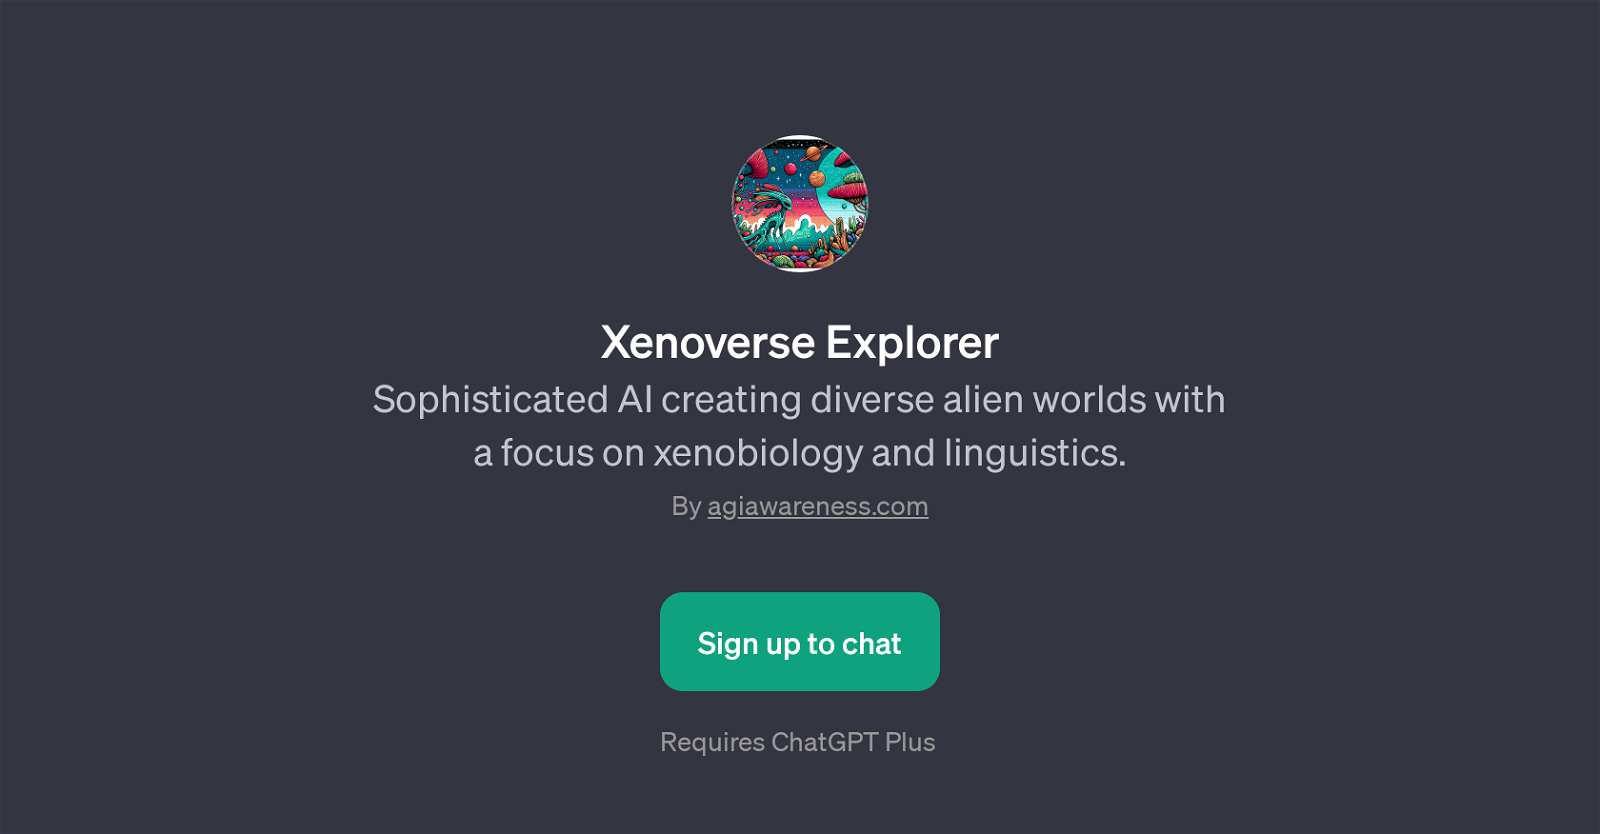 Xenoverse Explorer website